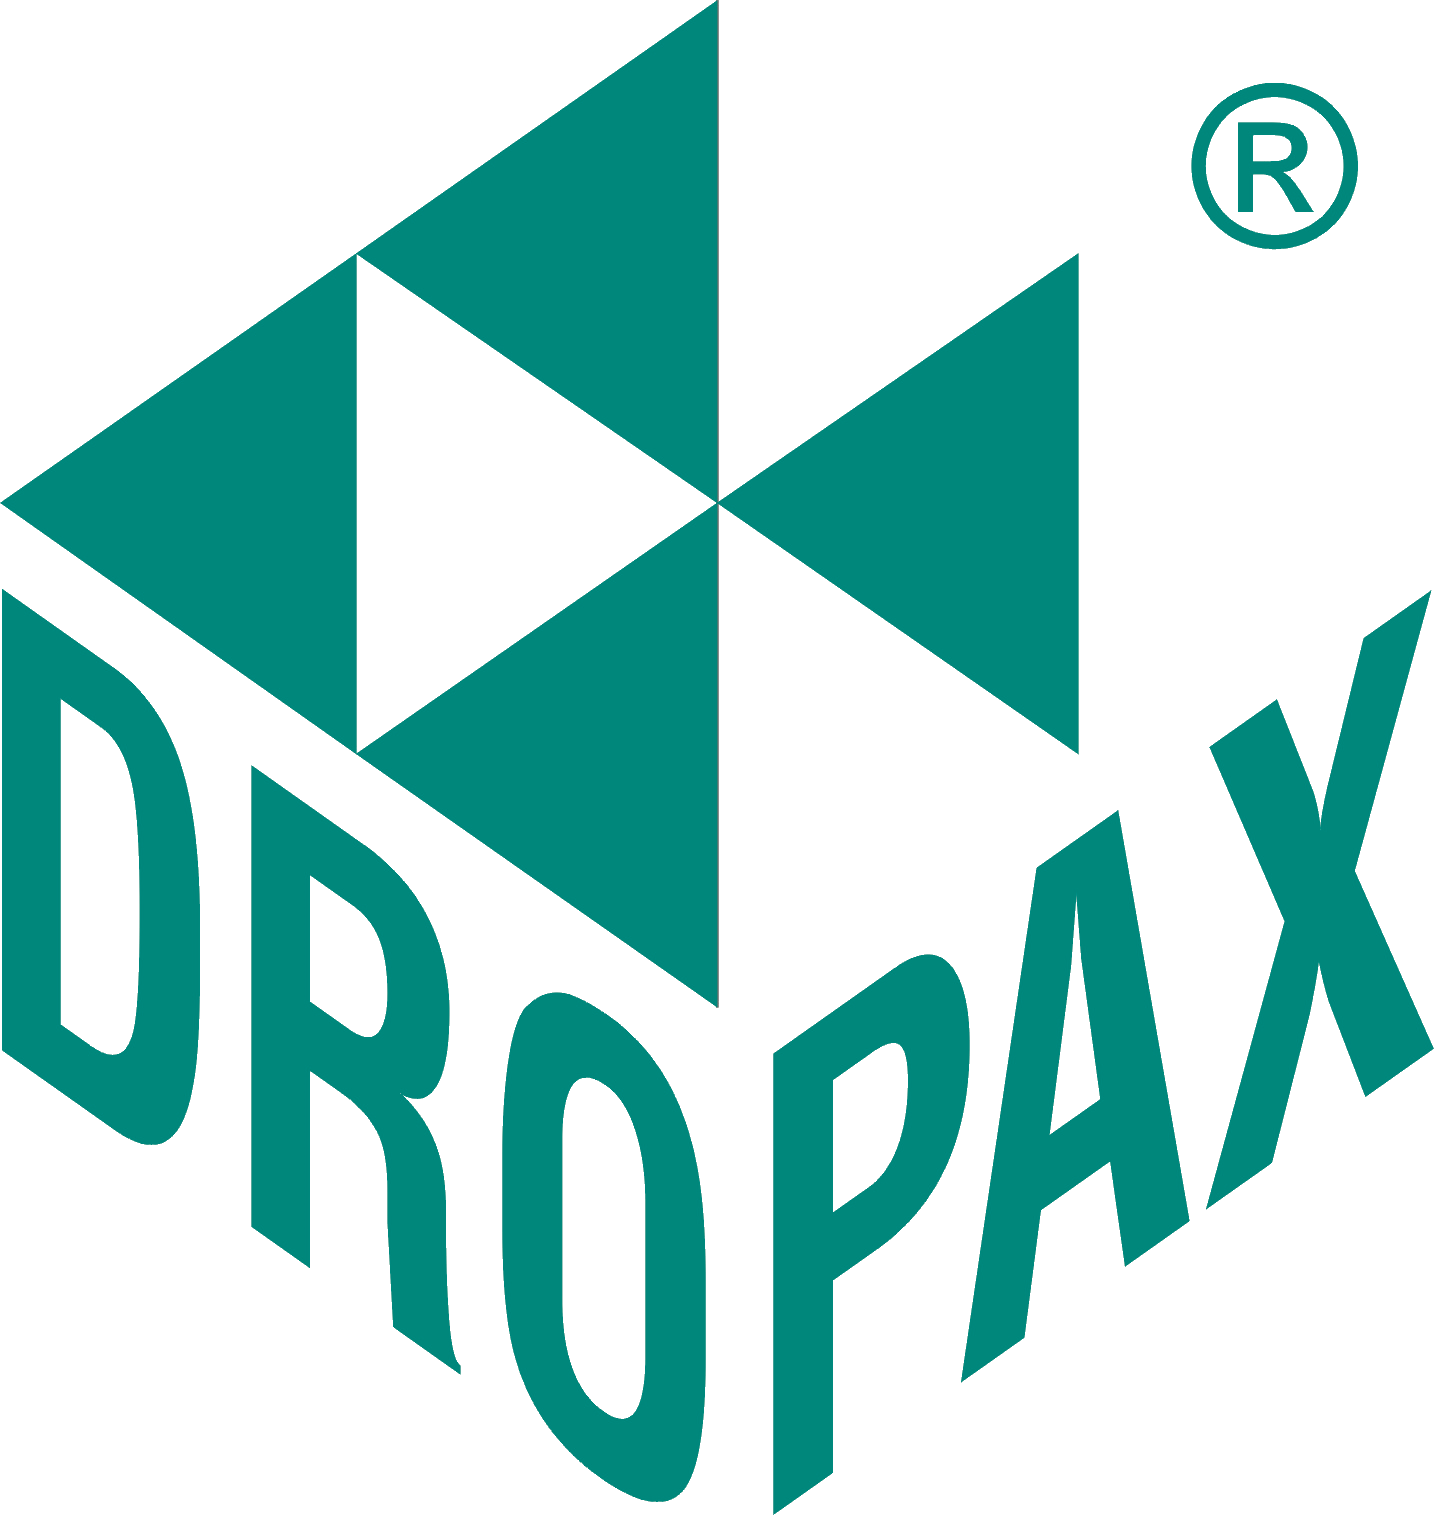 Dropax